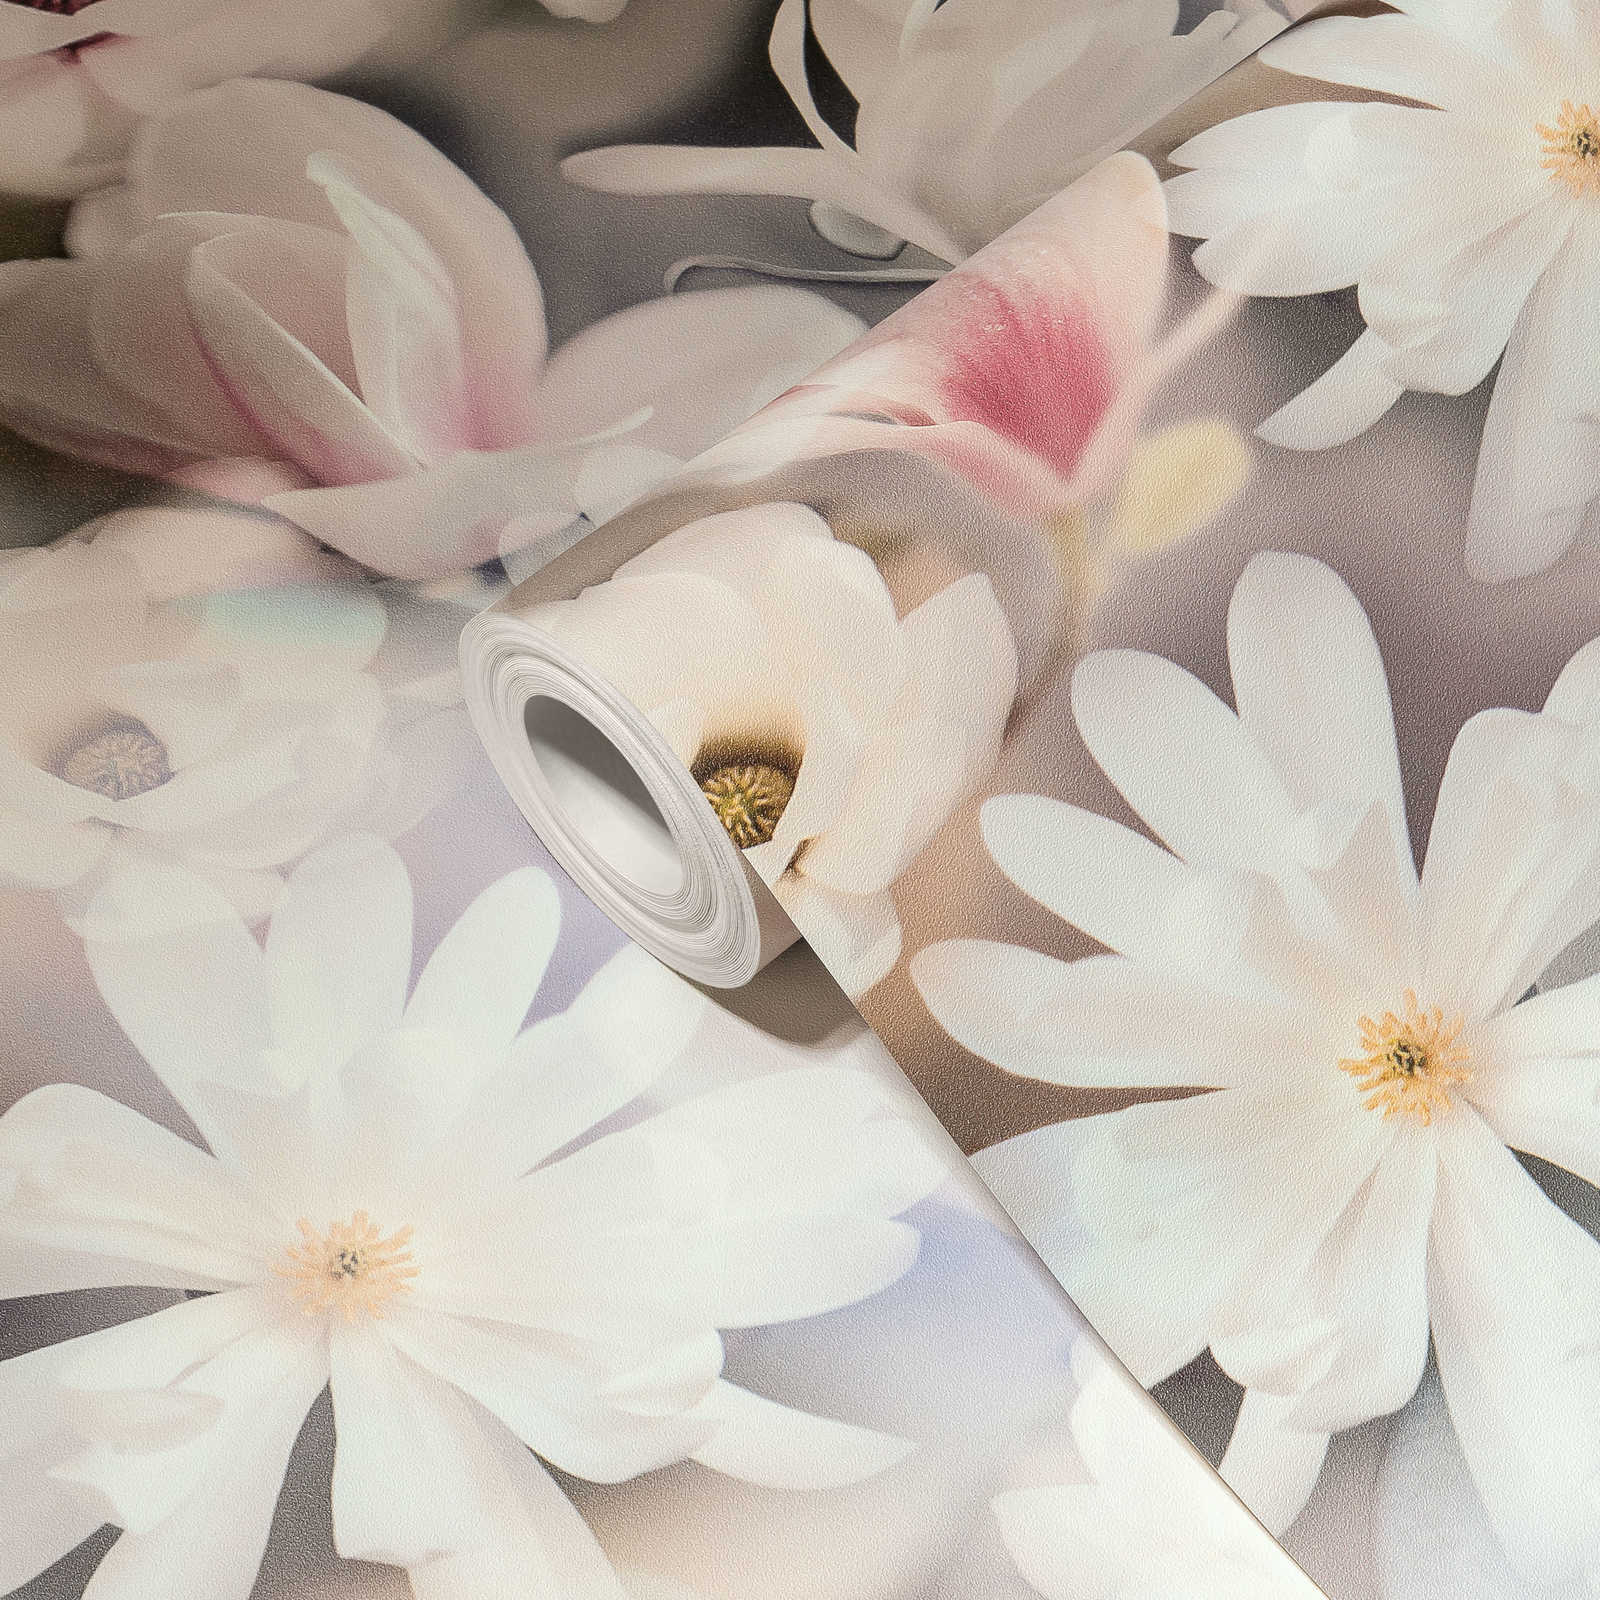             Tapete Blumen Collage in hellen Farben – Weiß, Rosa
        